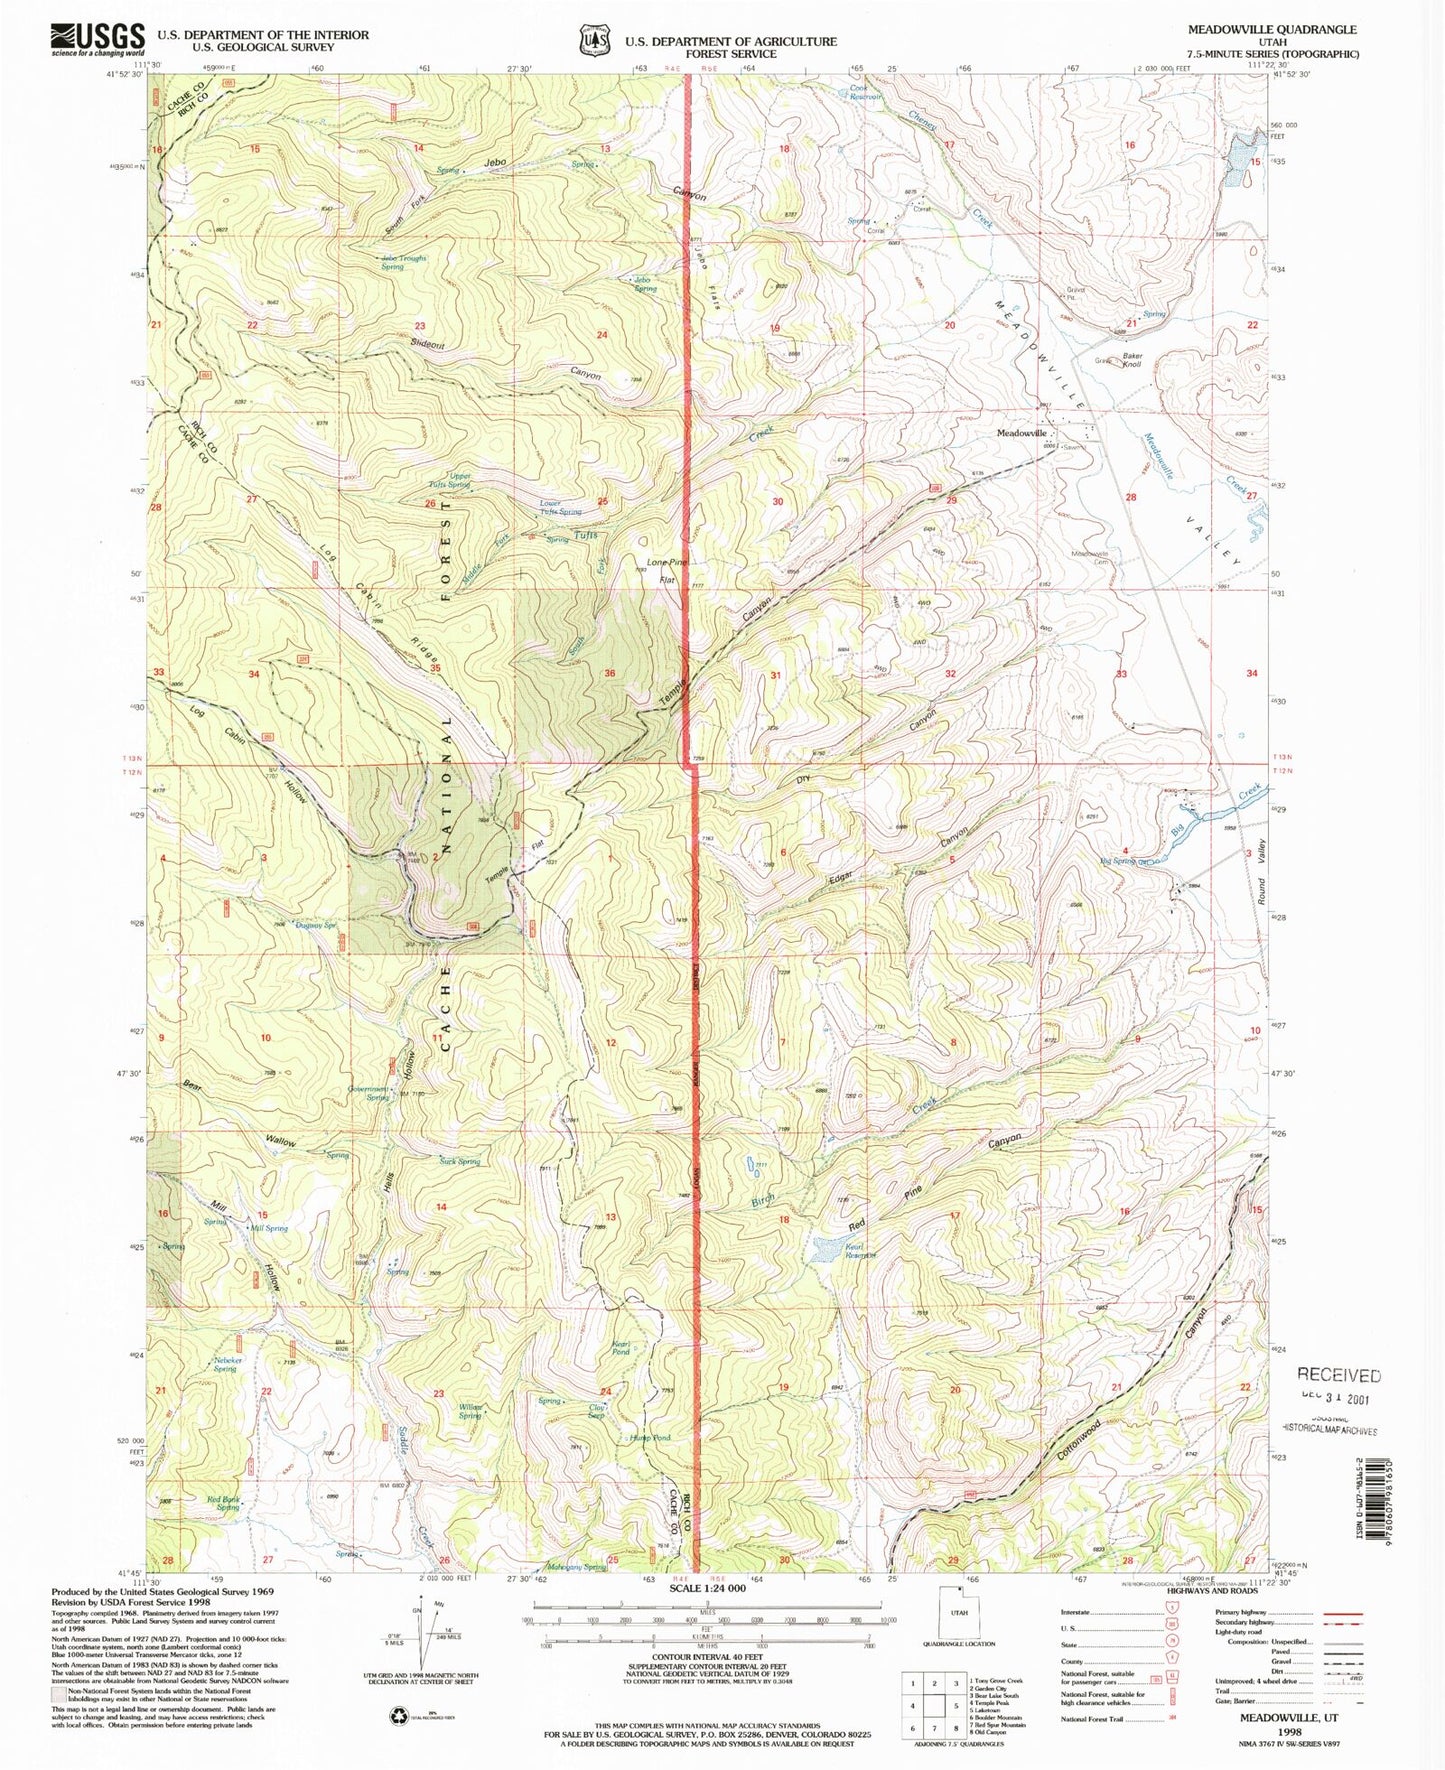 Classic USGS Meadowville Utah 7.5'x7.5' Topo Map Image